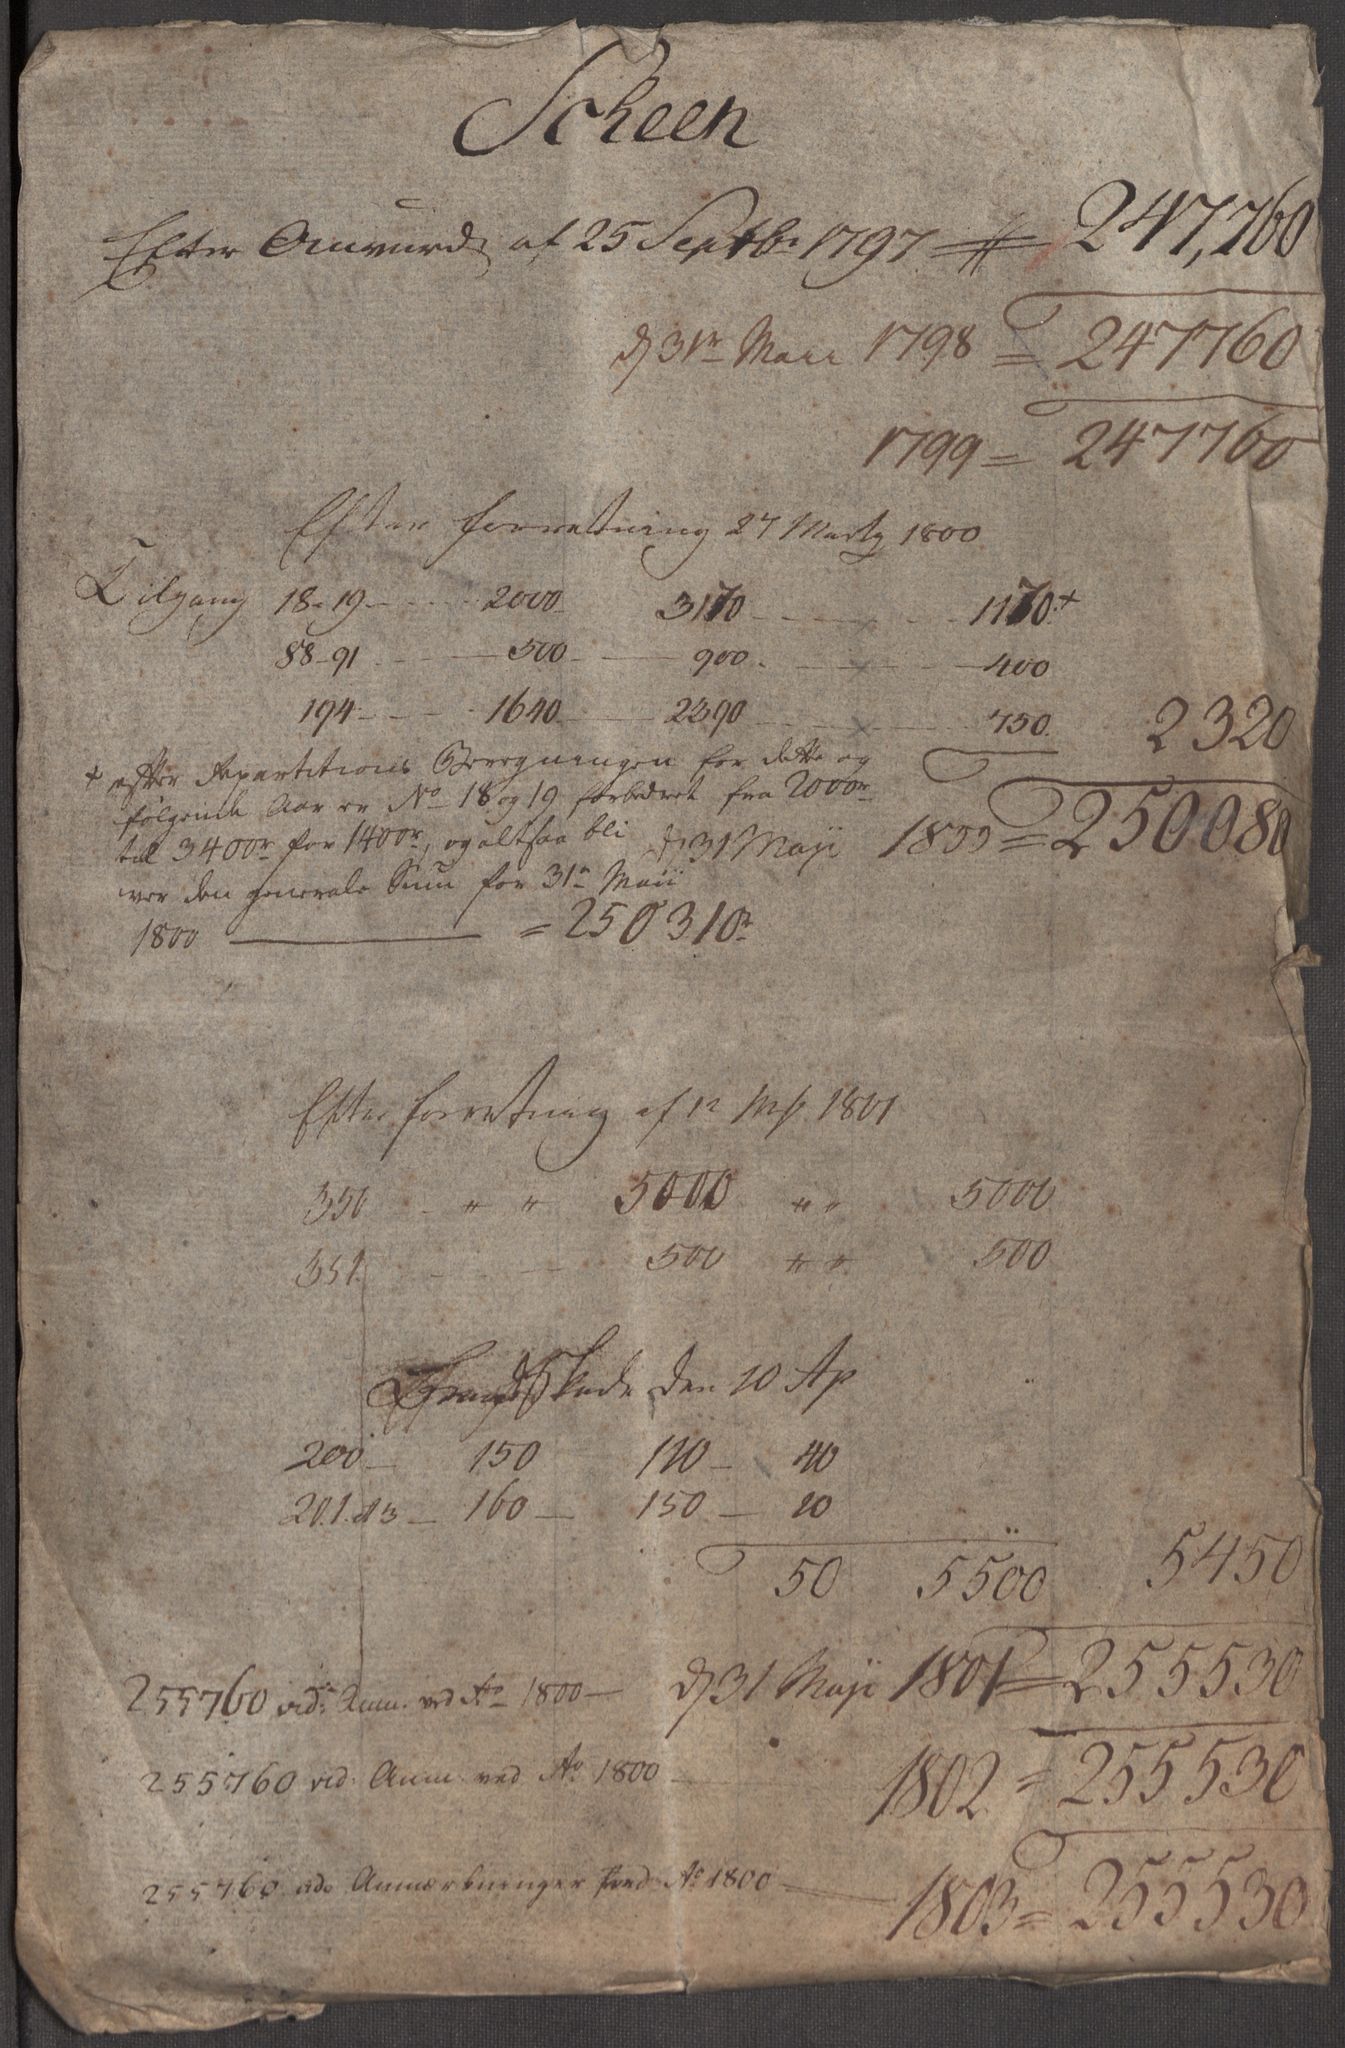 Kommersekollegiet, Brannforsikringskontoret 1767-1814, RA/EA-5458/F/Fa/L0045/0002: Skien / Dokumenter, 1797-1807